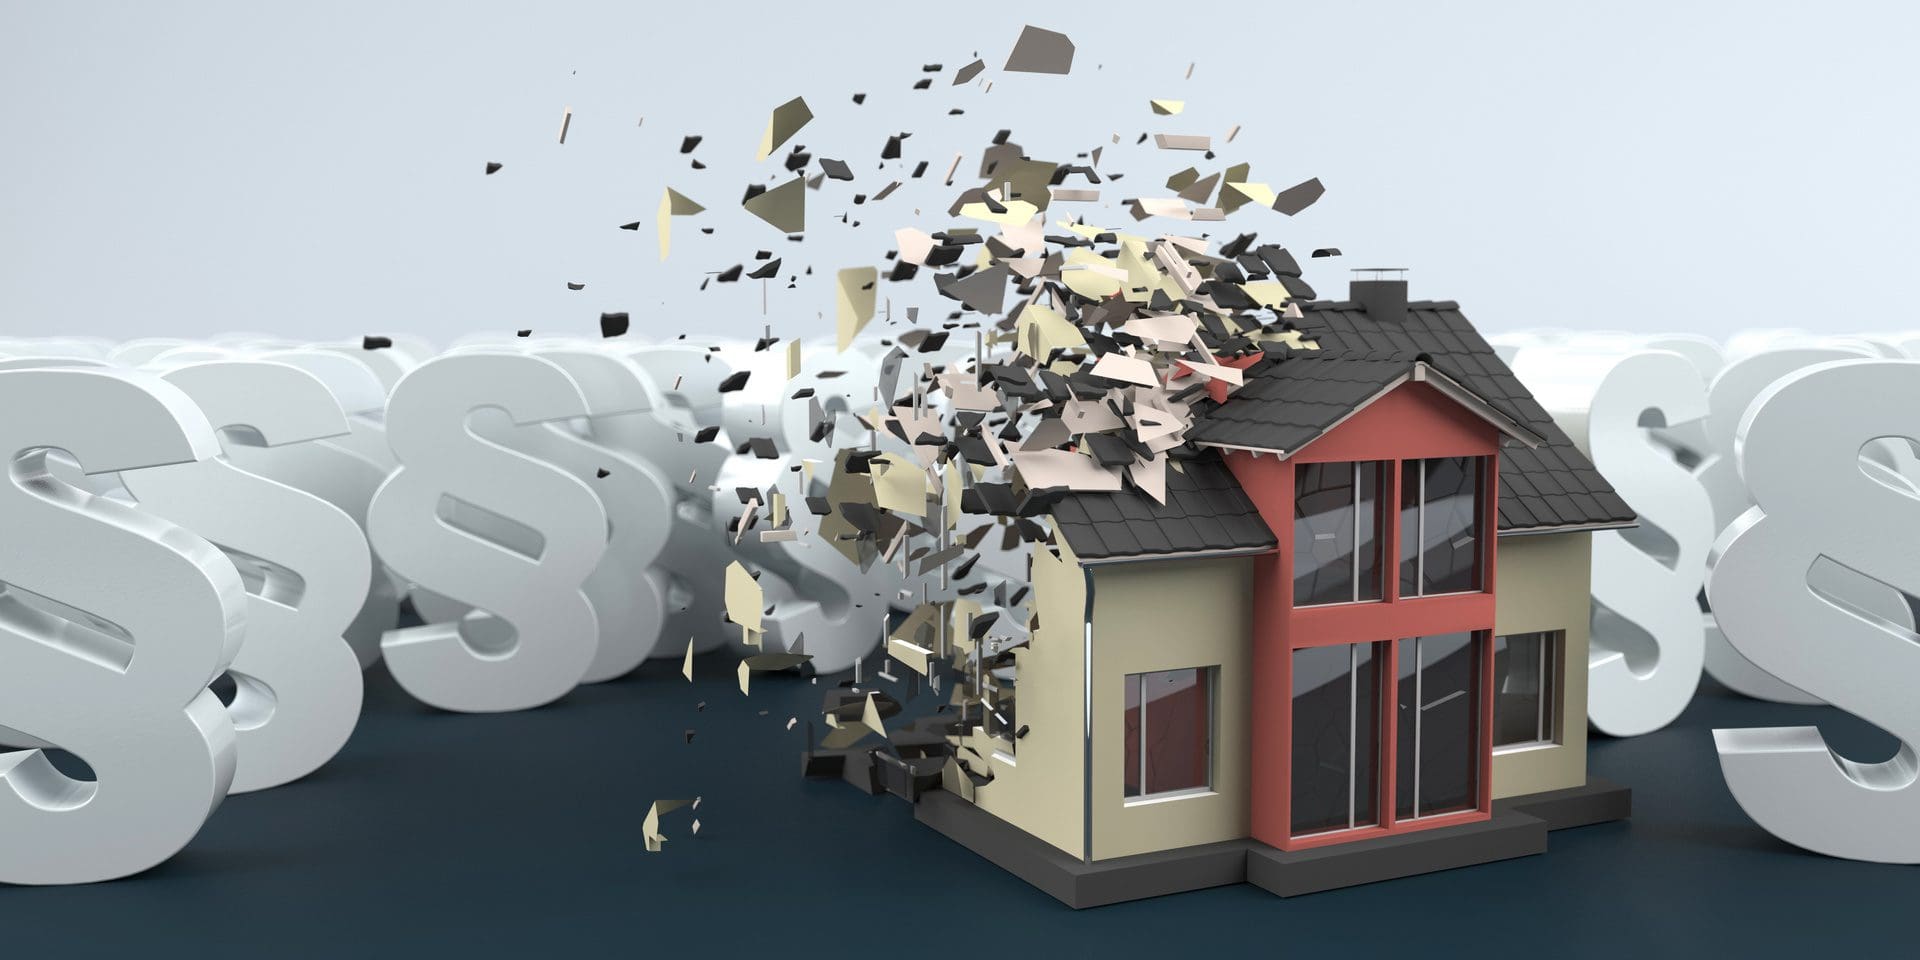 Gebäudeversicherung zahlt Schaden nicht komplett - was nun?